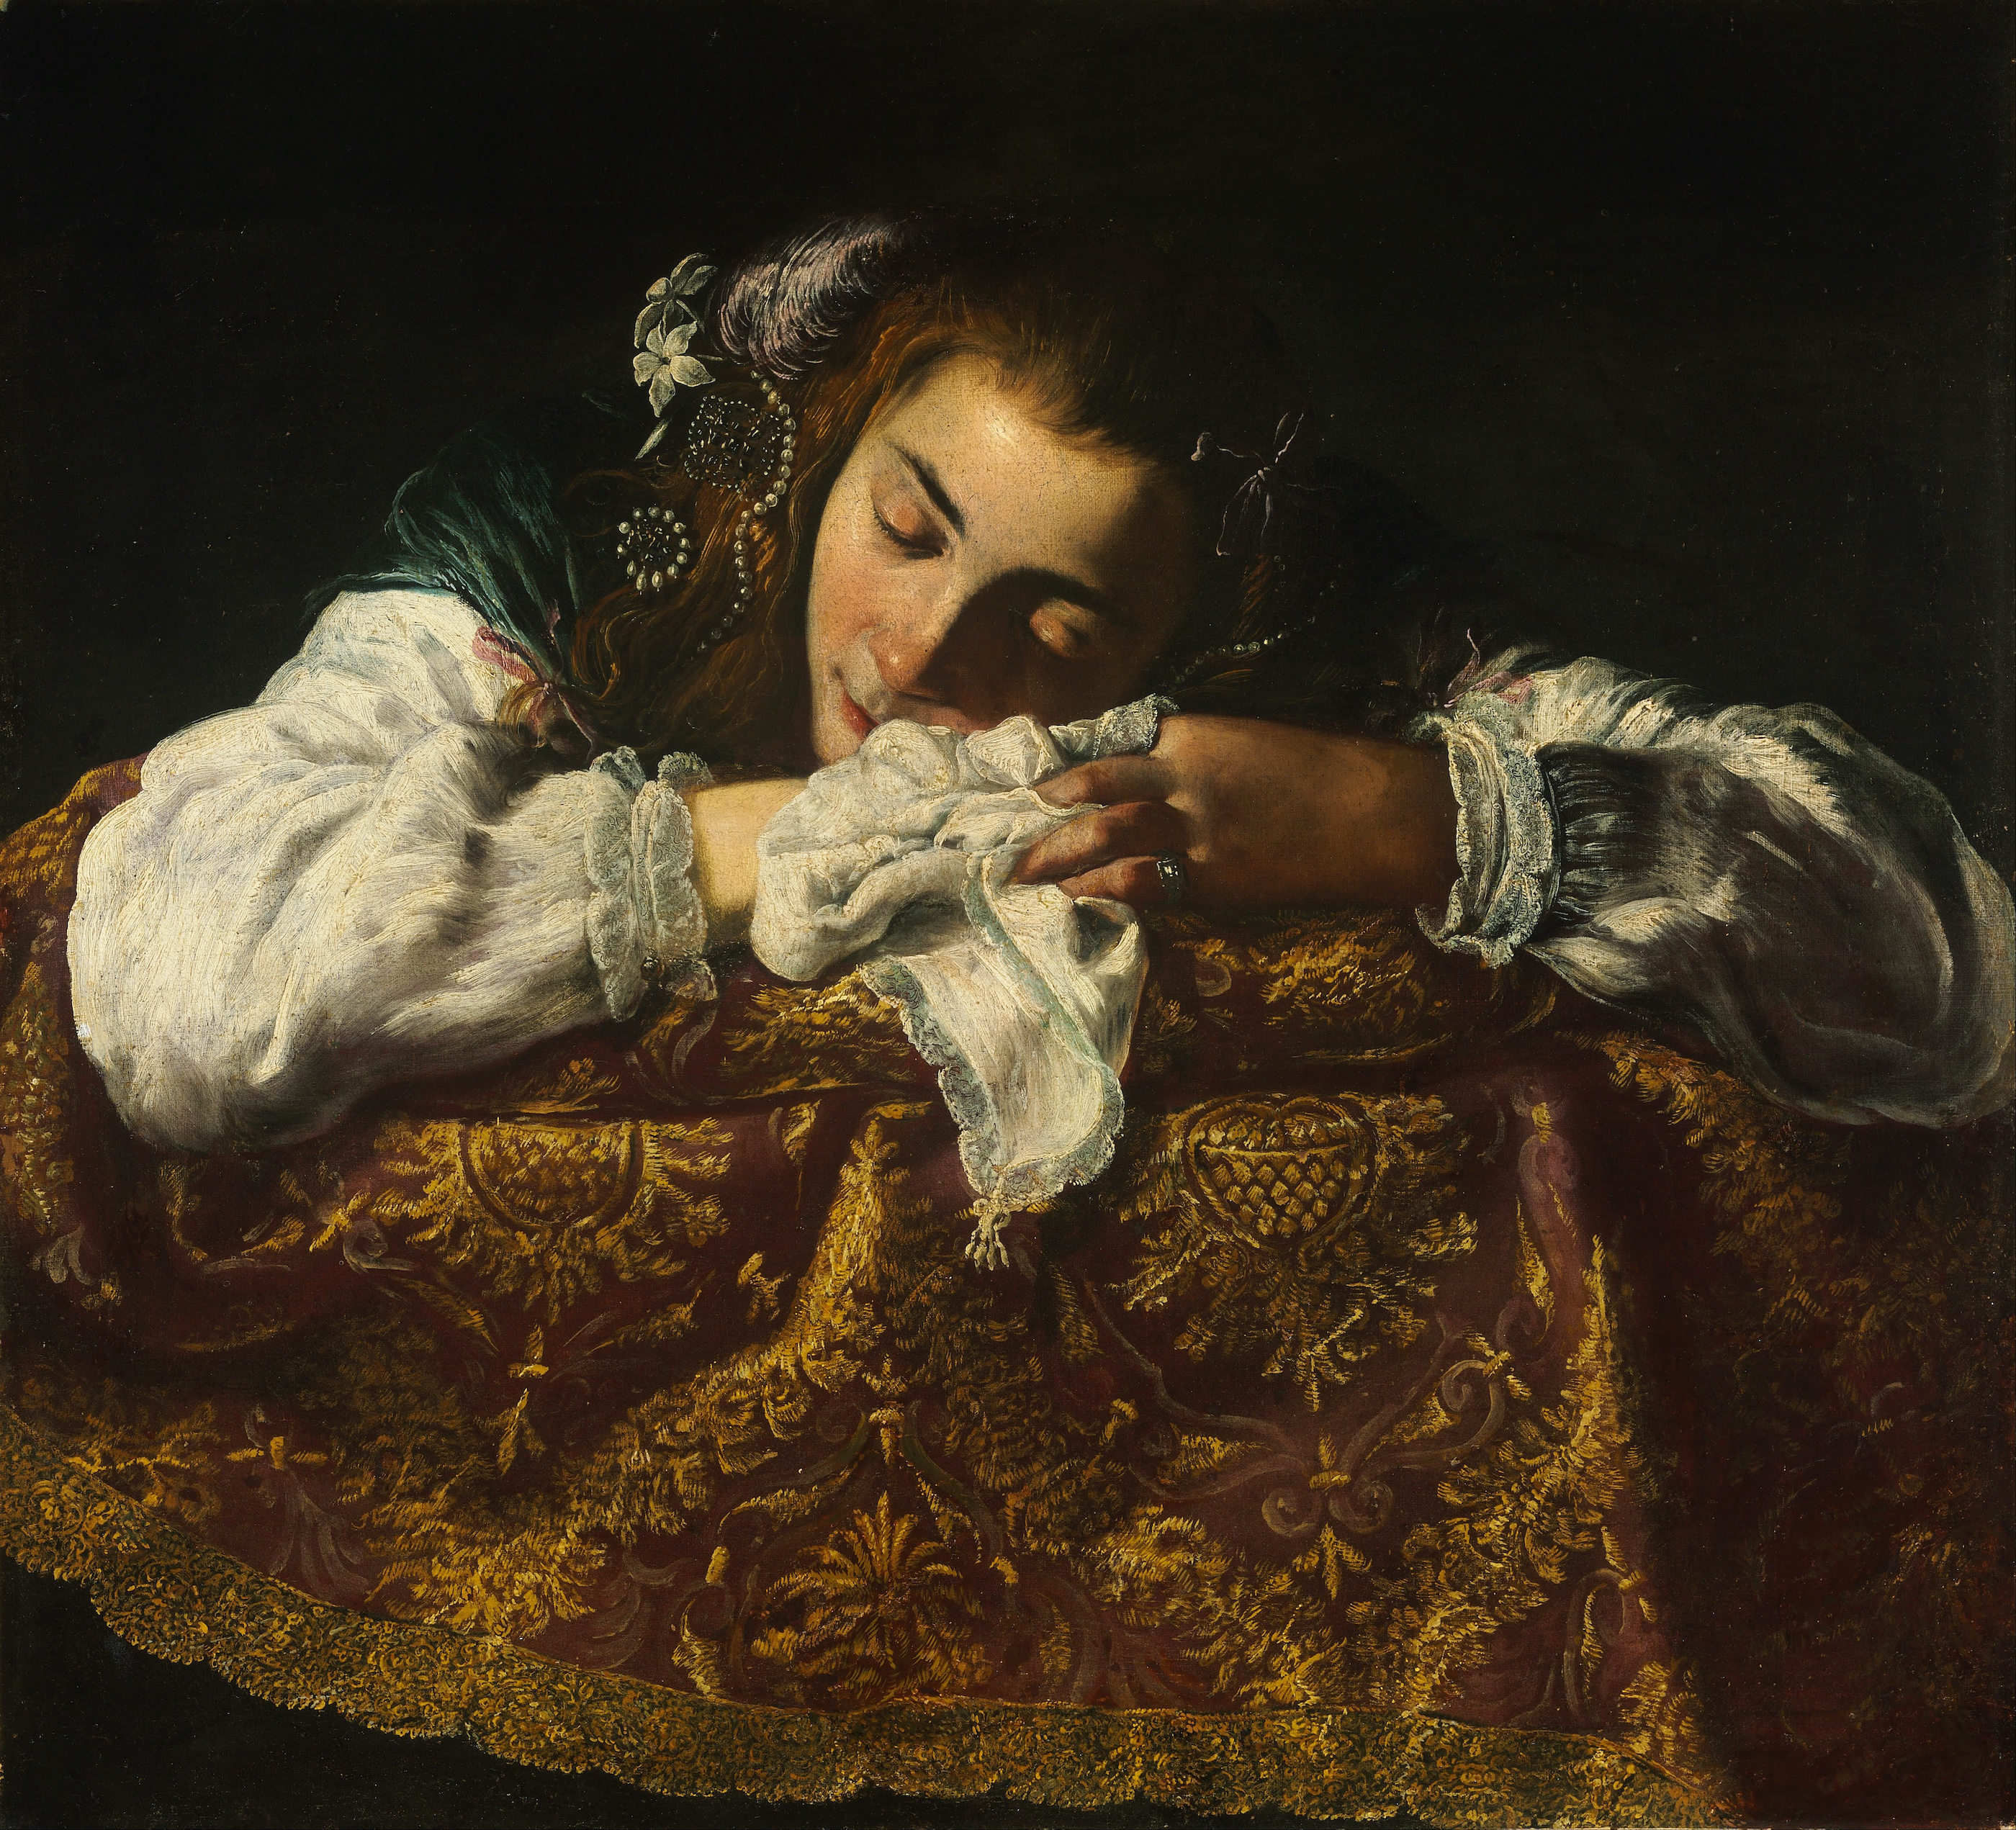 Спящая девушка by Неизвестный Художни - 1620 - 1622 - 67,5 x 74 см 